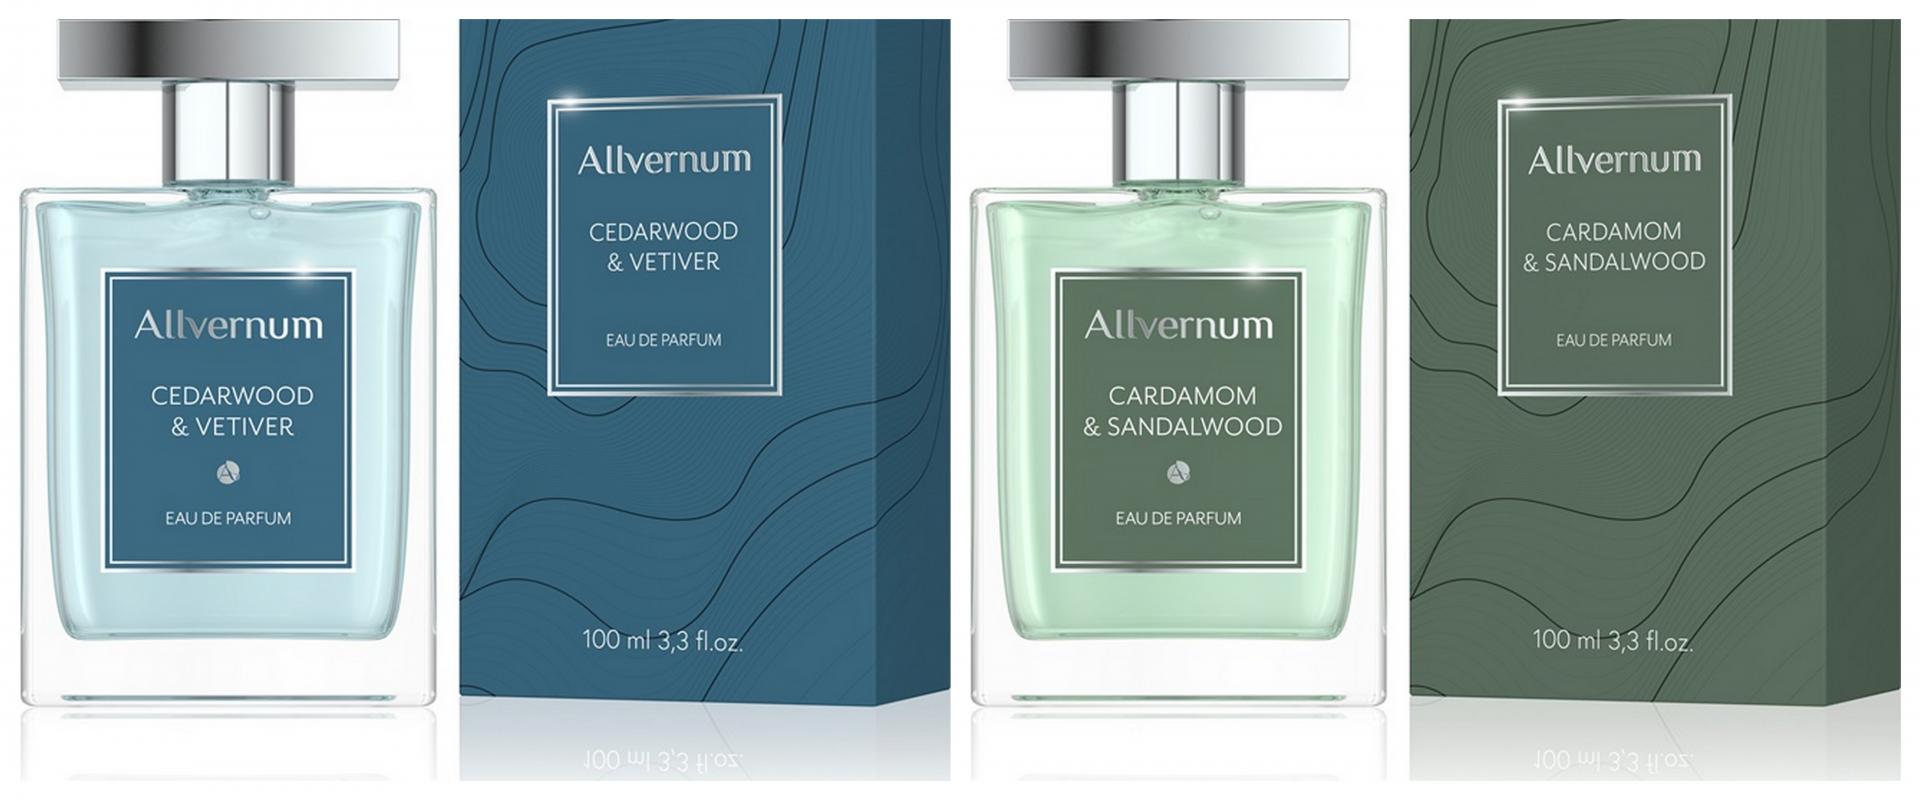 LCA 2020: His Sensational Fragrance - Allvernum